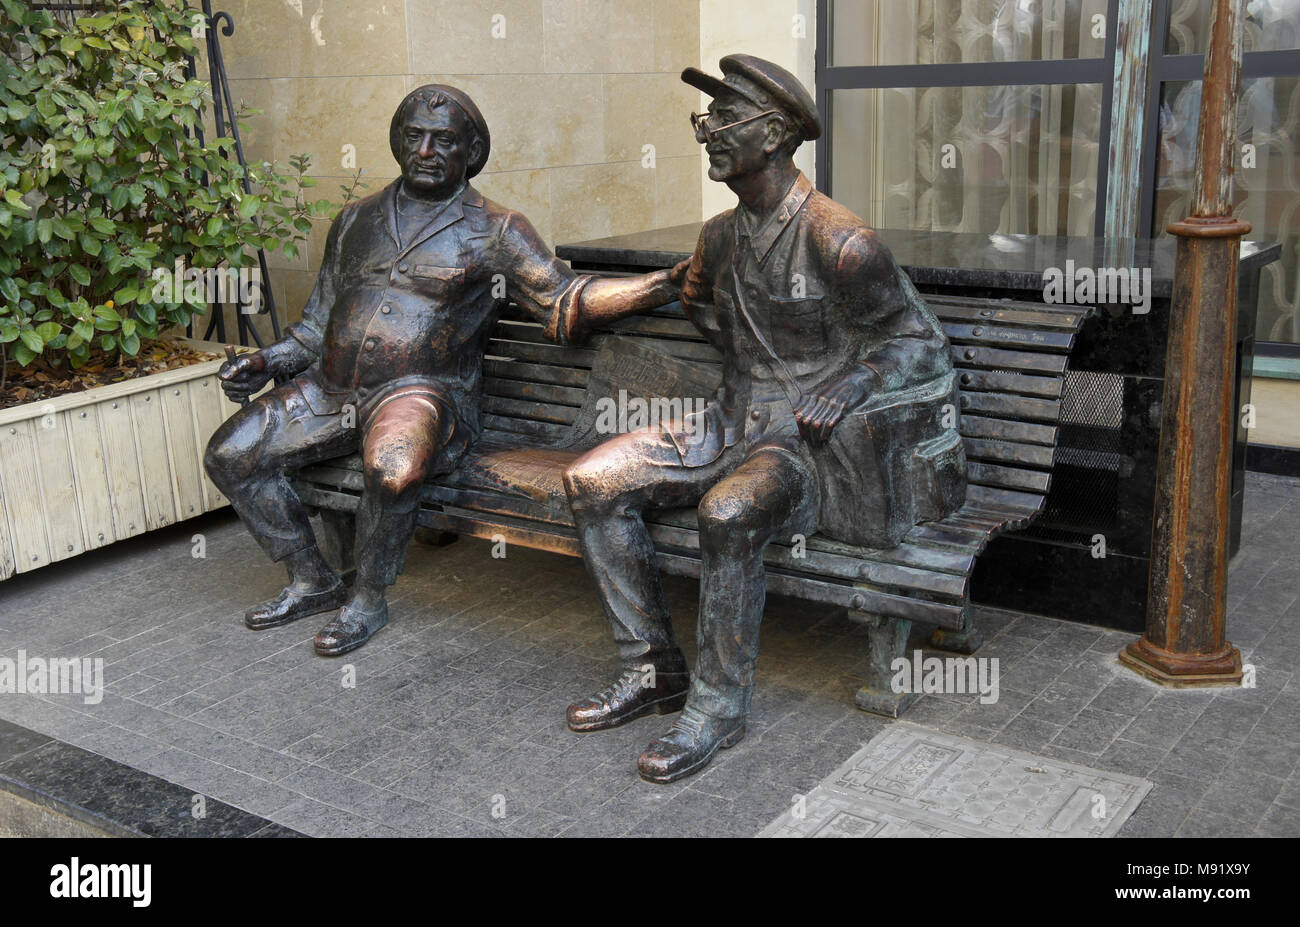 Sculpture en bronze d'un transporteur et son ami sur un banc à l'extérieur d'un restaurant en vieille ville, Tbilissi, Géorgie Banque D'Images